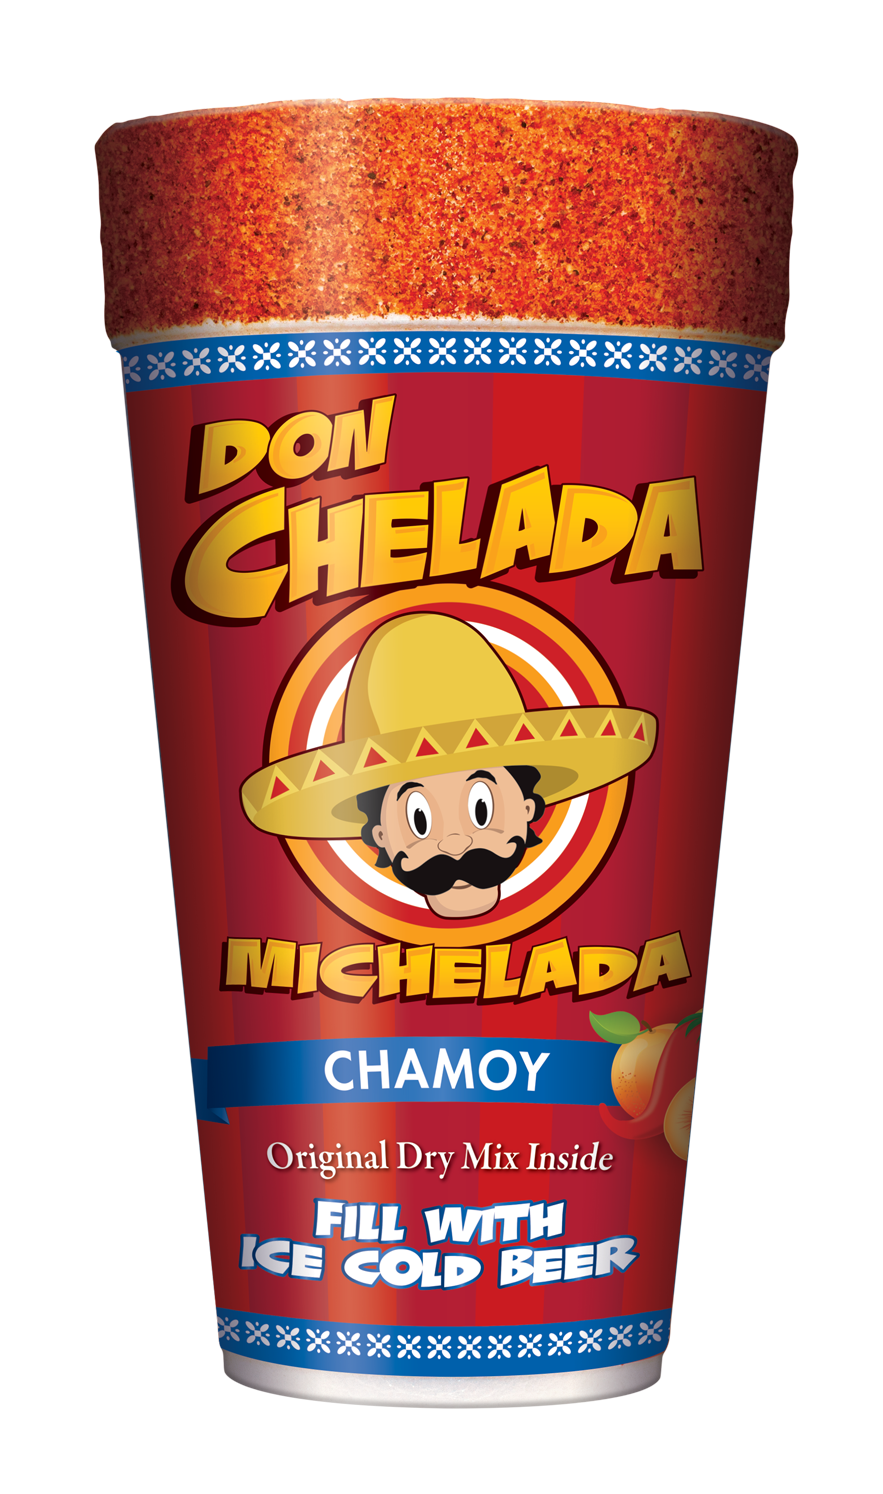 DON CHELADA MICHELADA CUPS